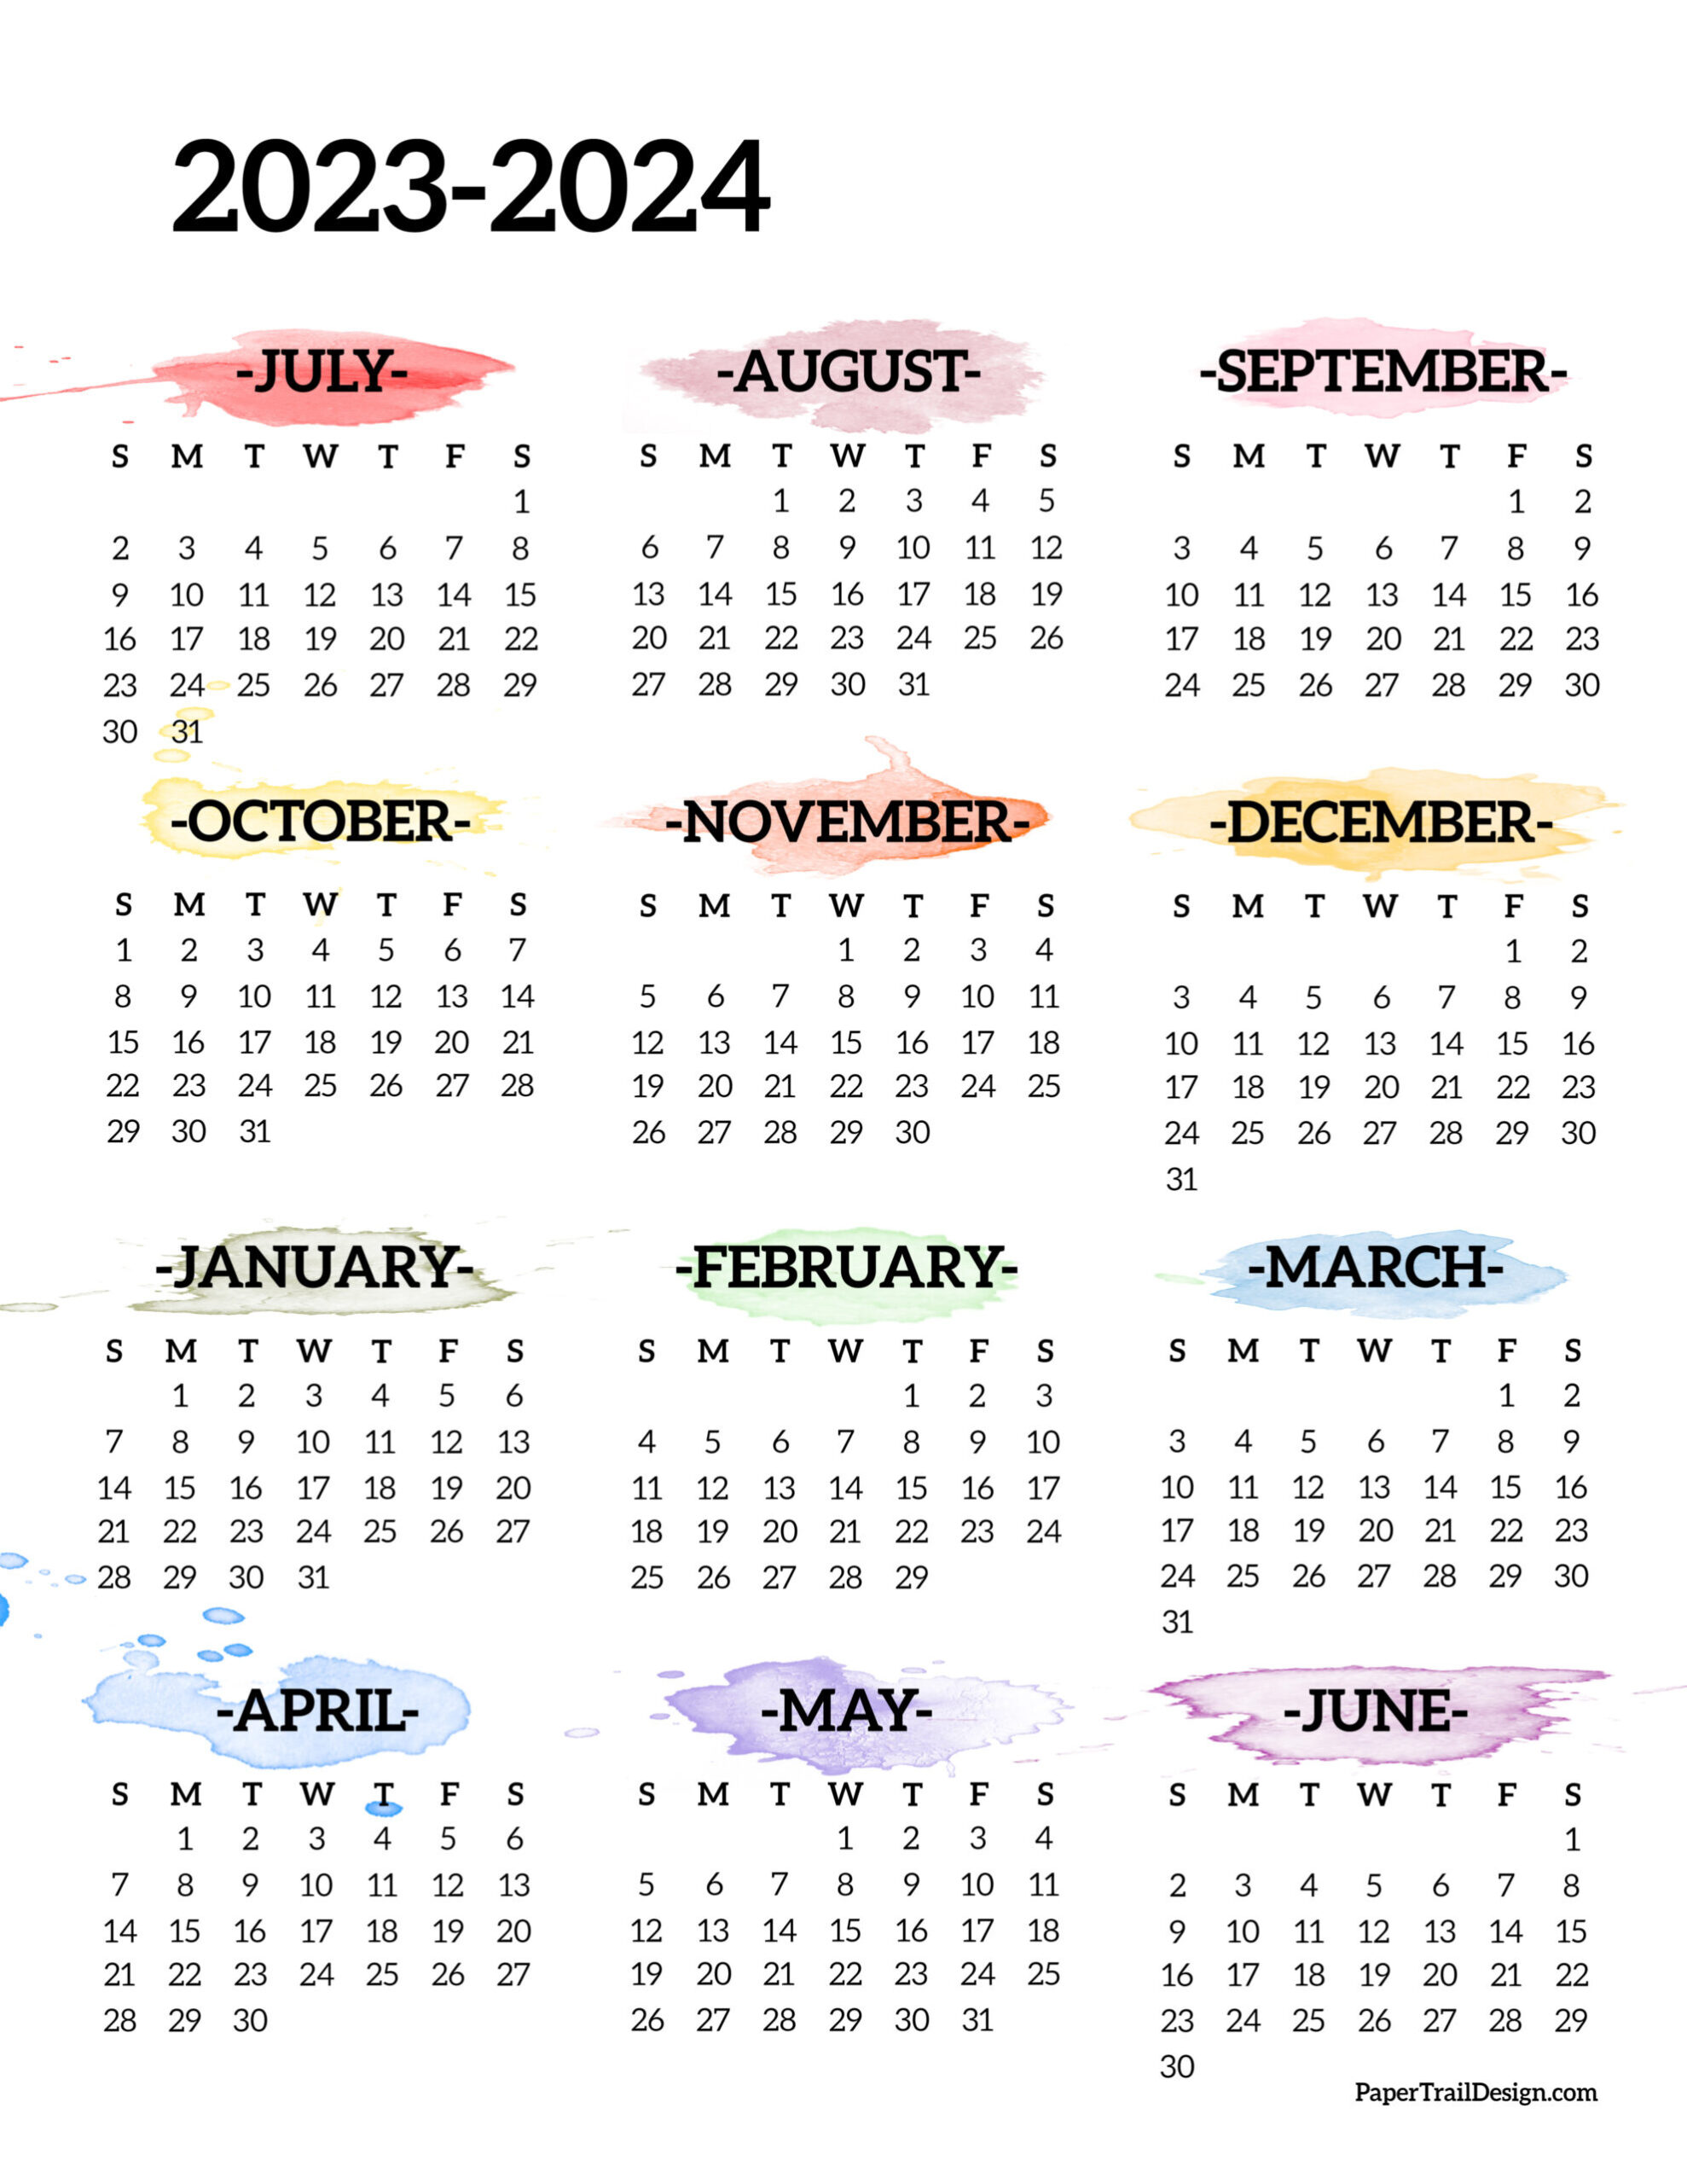 2023-2024 School Year Calendar Free Printable - Paper Trail Design for Calendar June 2023-June 2024